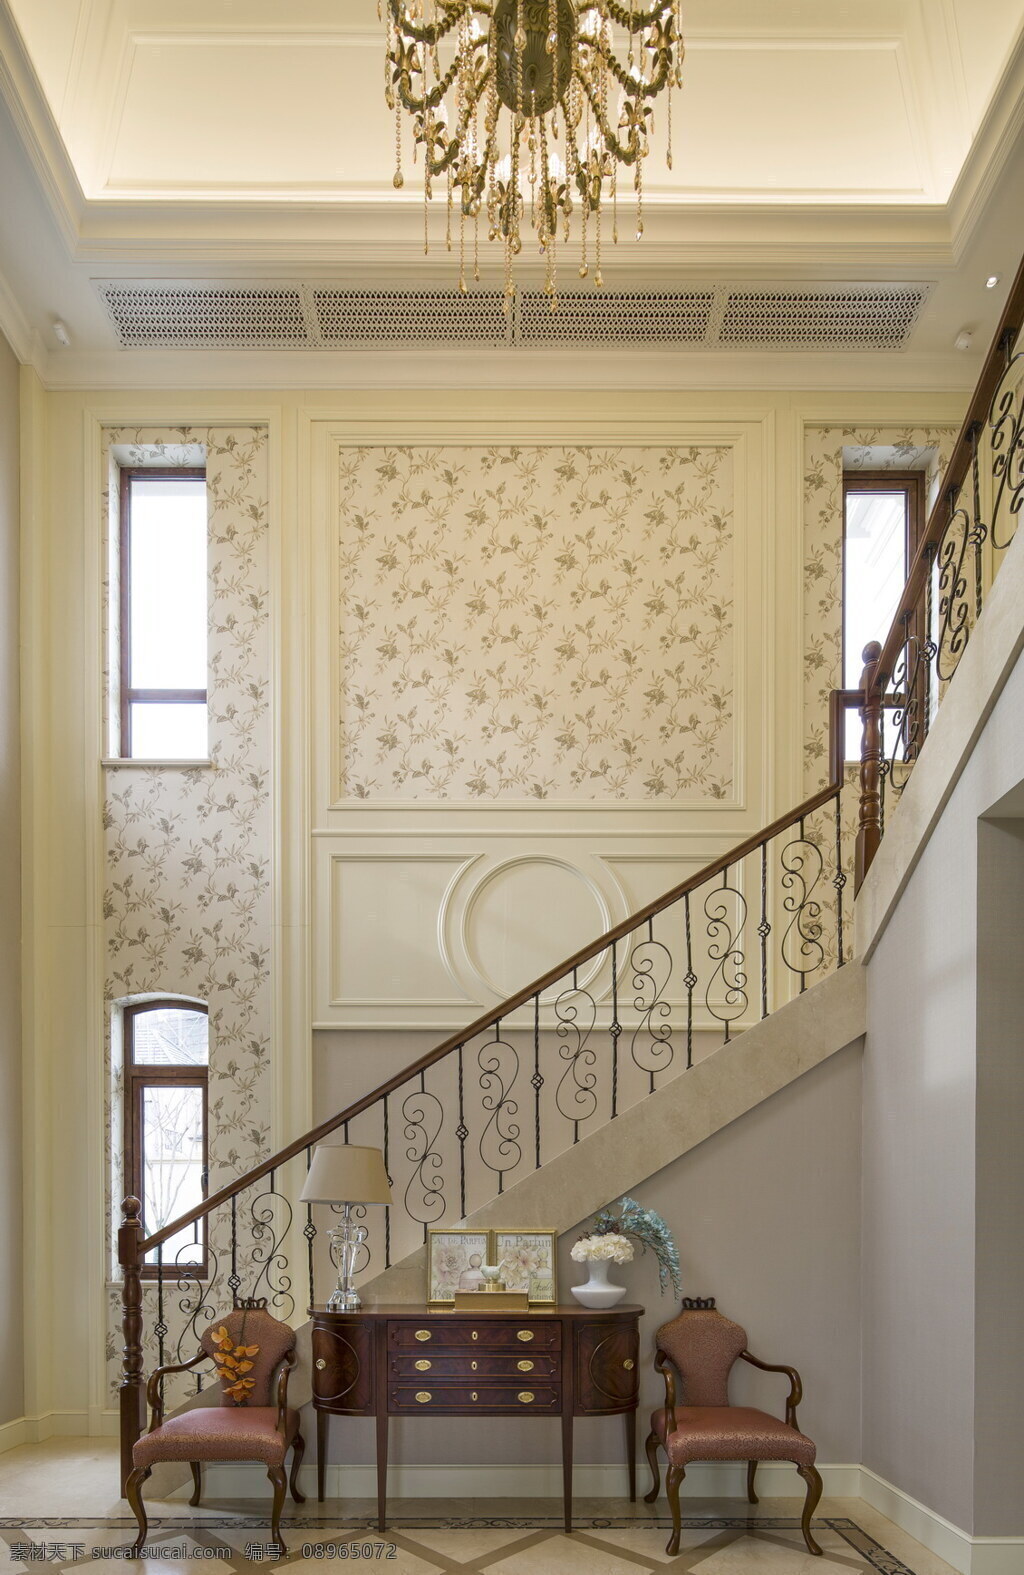 法式简约时尚 楼梯设计图 家居 家居生活 室内设计 装修 室内 家具 装修设计 环境设计 简约 时尚 楼梯